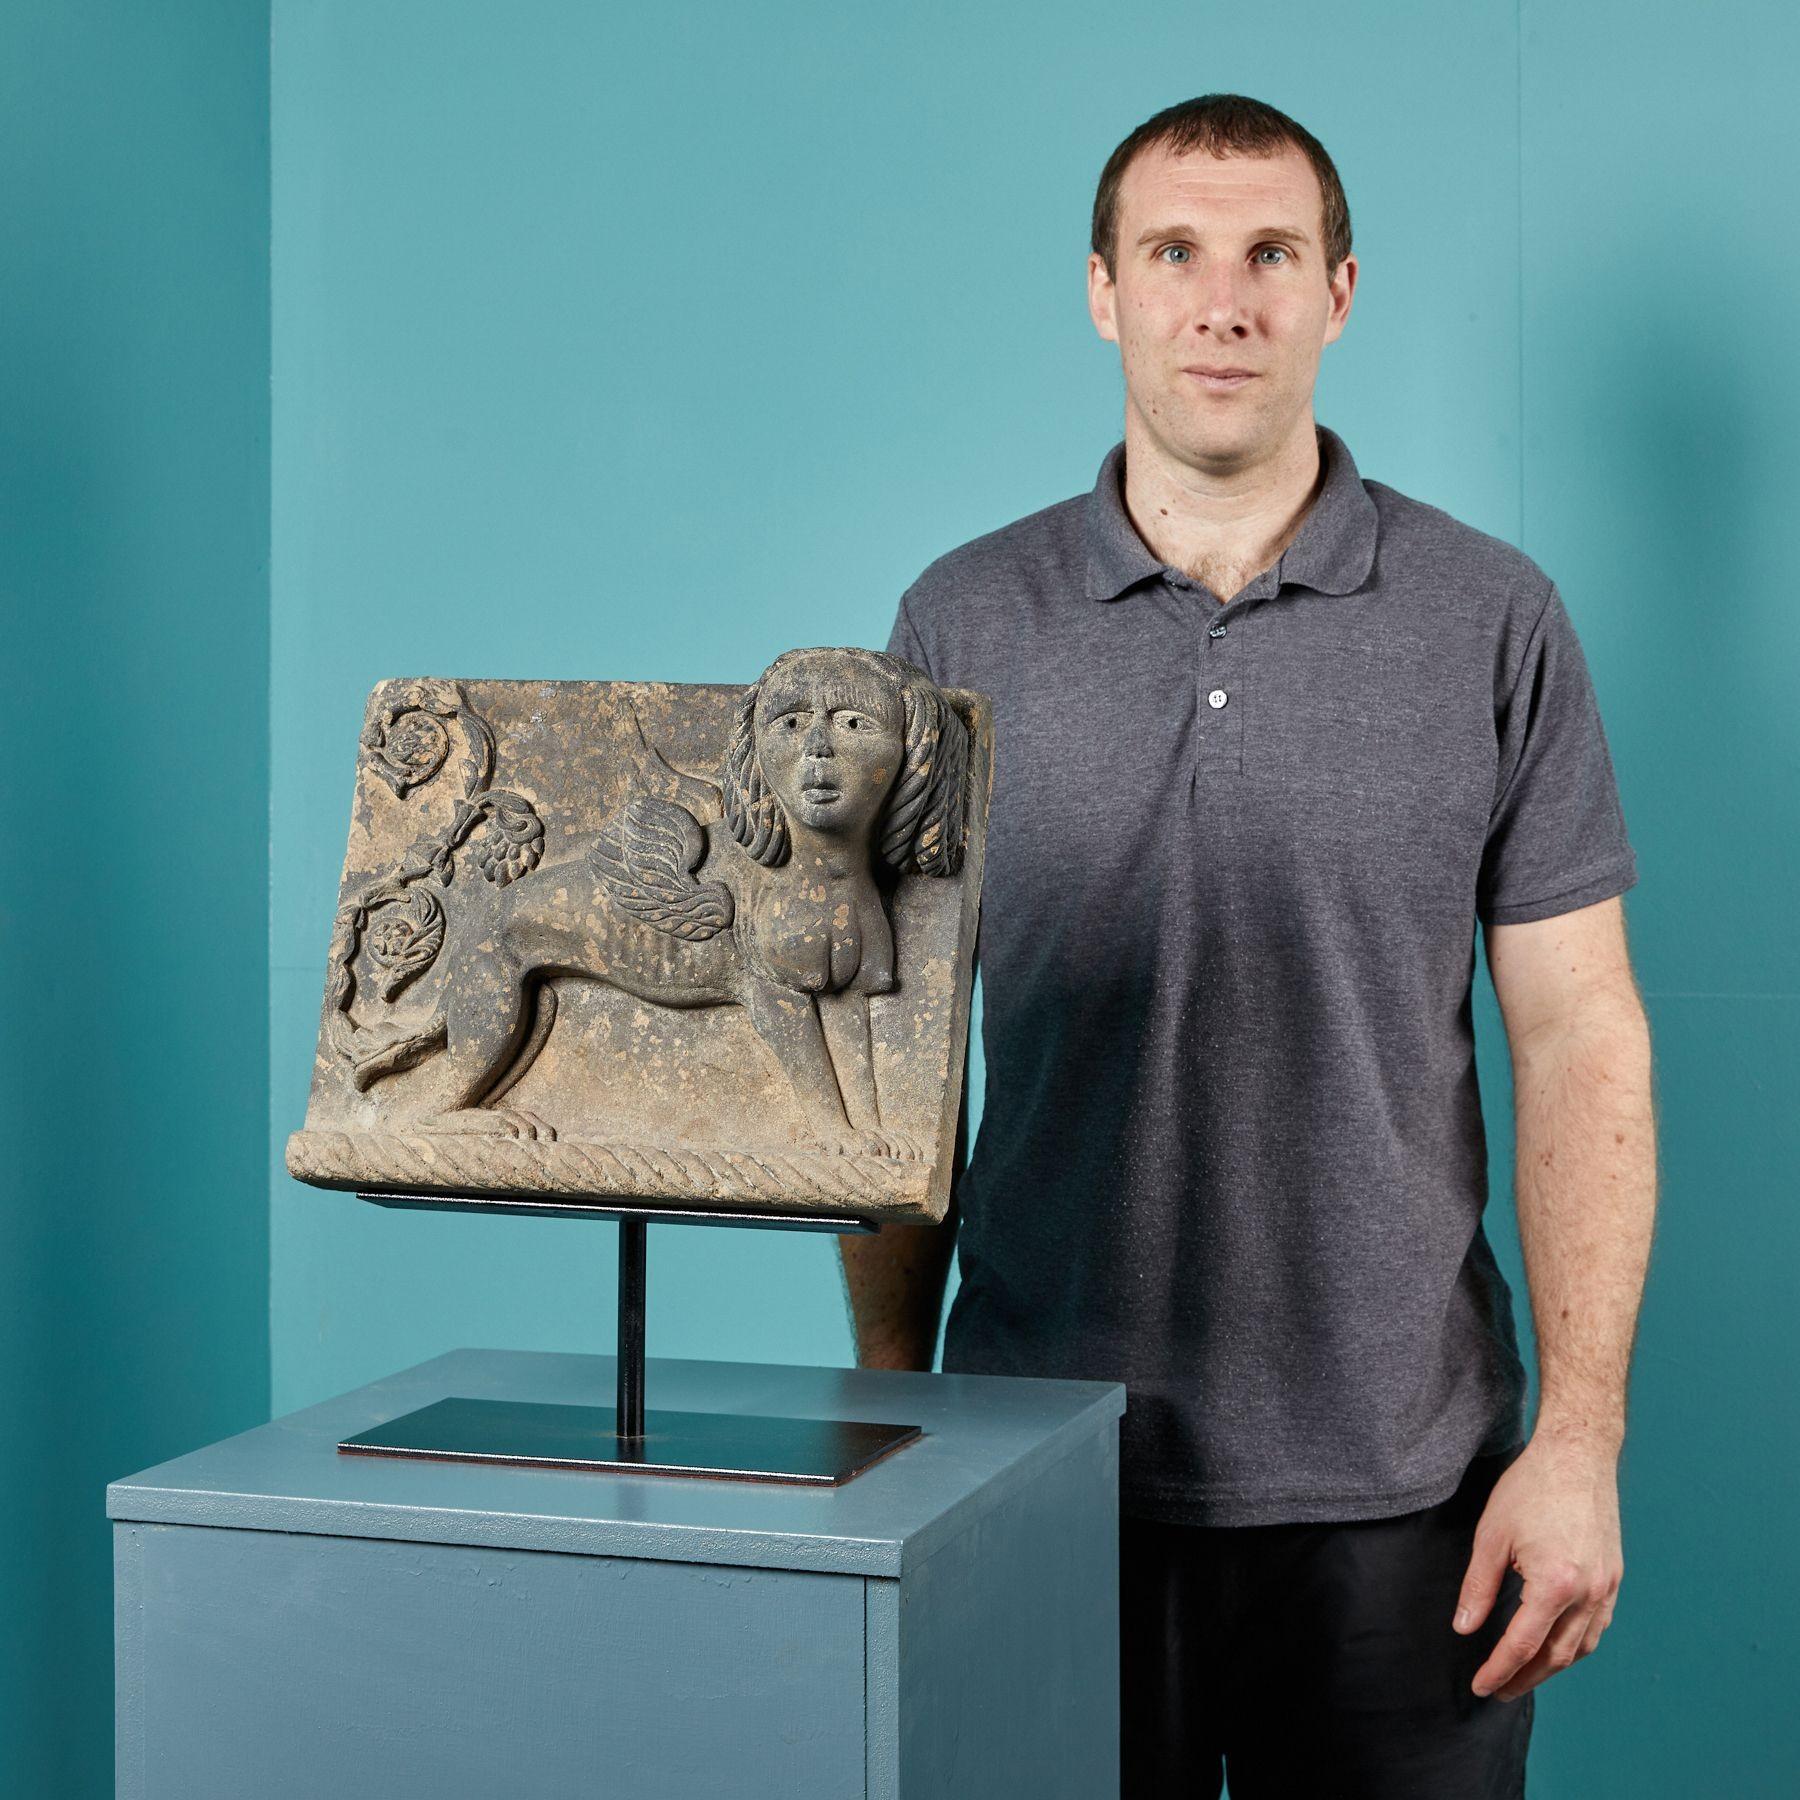 Diese antike Steintafel ist ein Fragment der Geschichte. Eine mythische Sphinx mit dem Kopf eines Menschen, dem Körper eines Löwen und den Flügeln eines Falken ist seit mehr als 200 Jahren gut erhalten. Komplizierte Details wie die Nase, die Augen